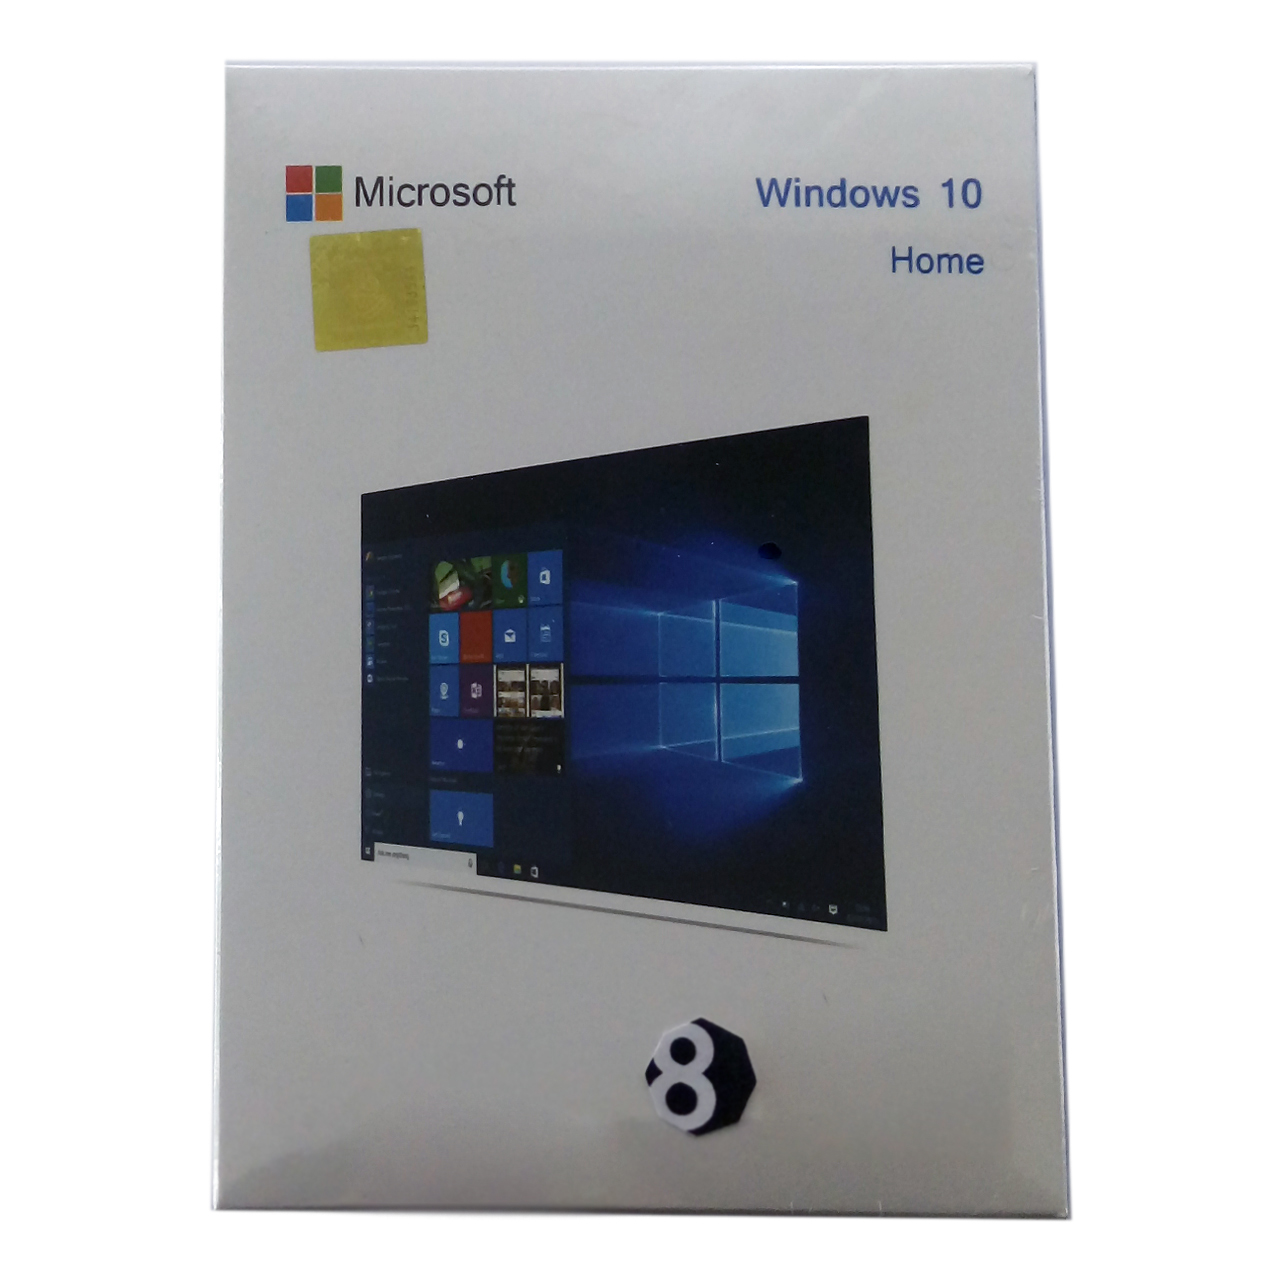 سیستم عامل ویندوز 10 نسخه هوم OEM نشر پاردا